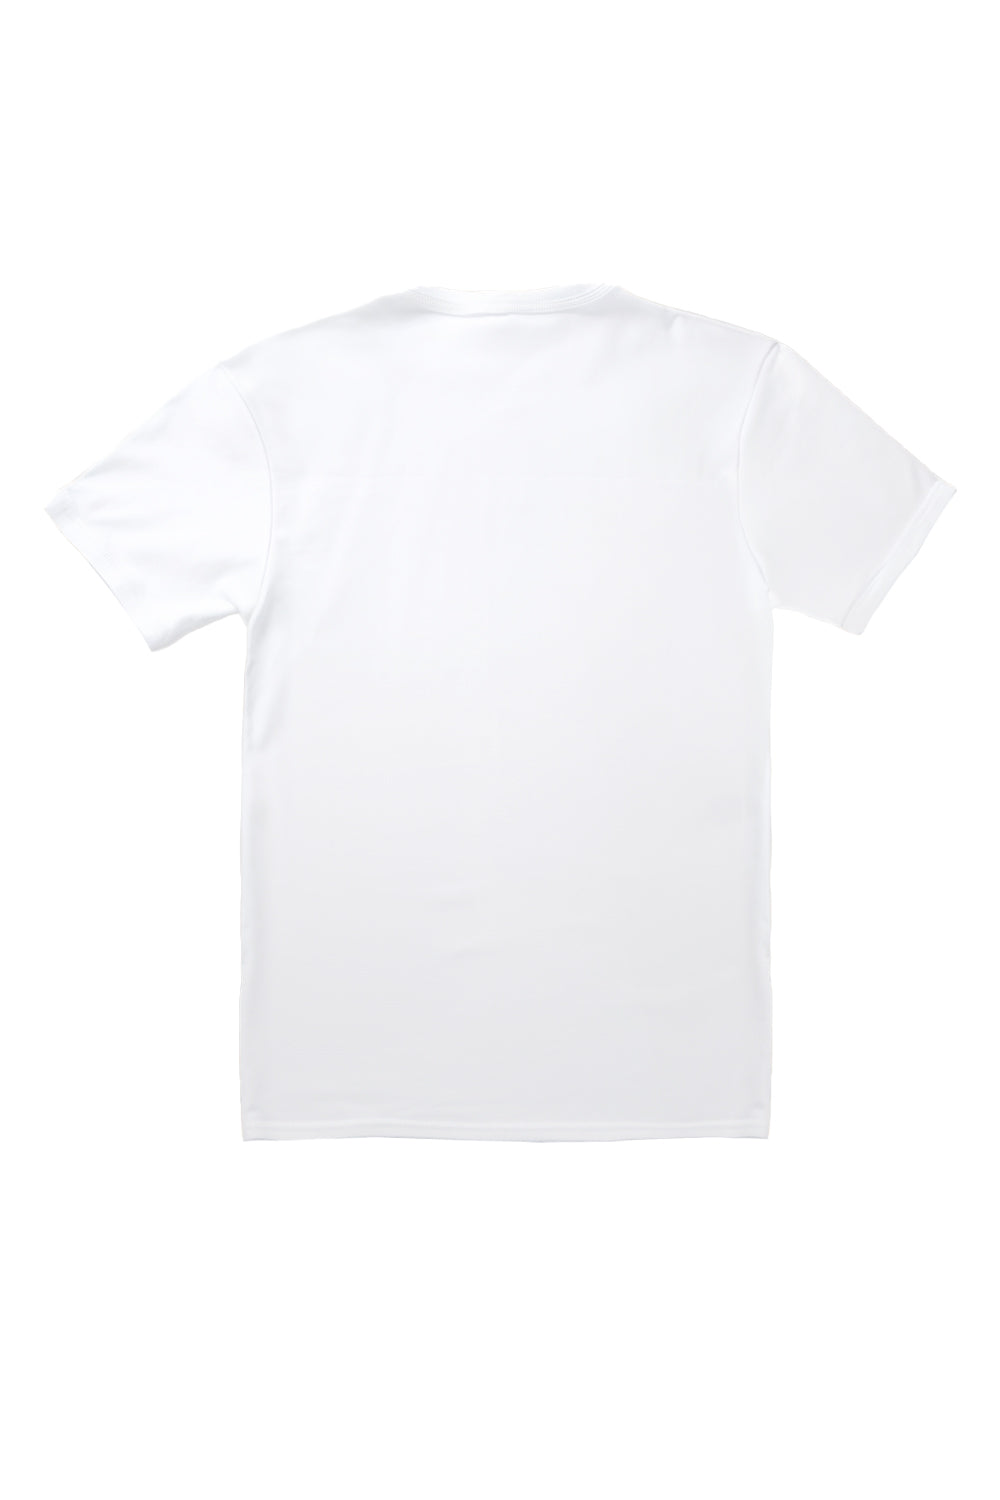 Sakura T-Shirt in White (Custom Packs)